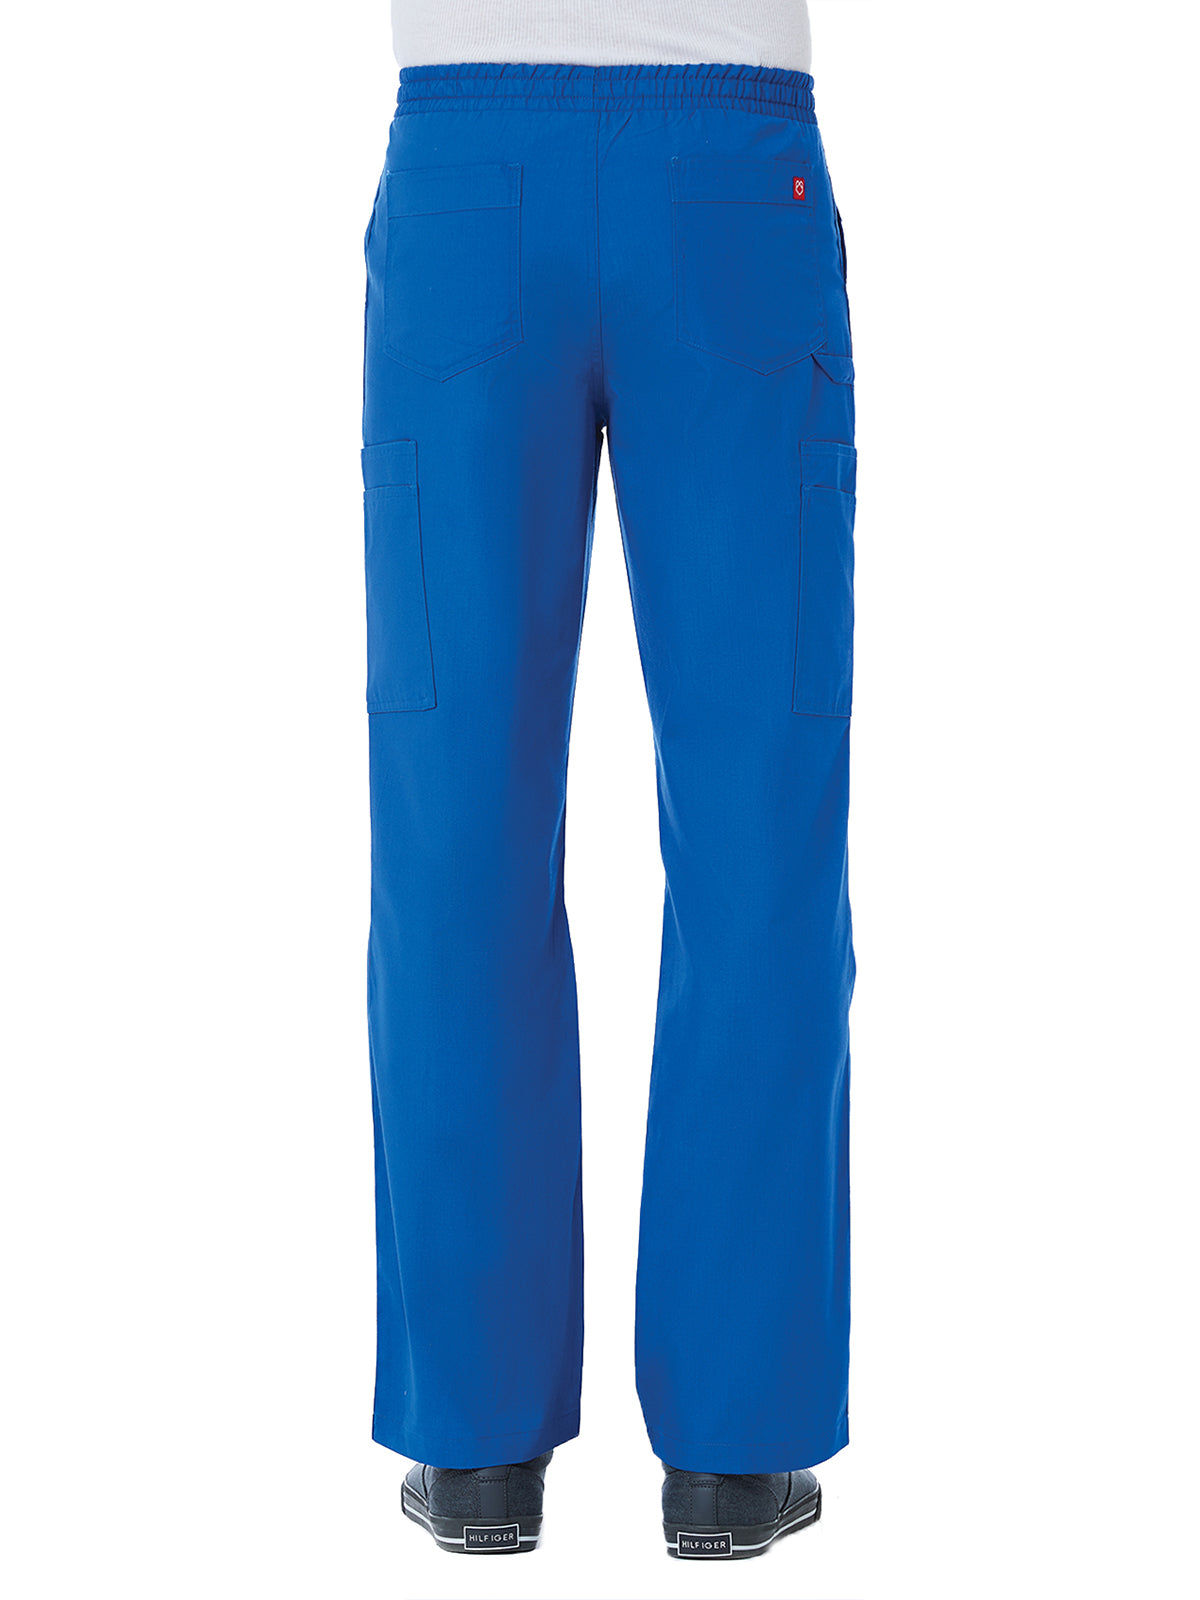 Men's Full Elastic Pant - 8206 - Royal Blue